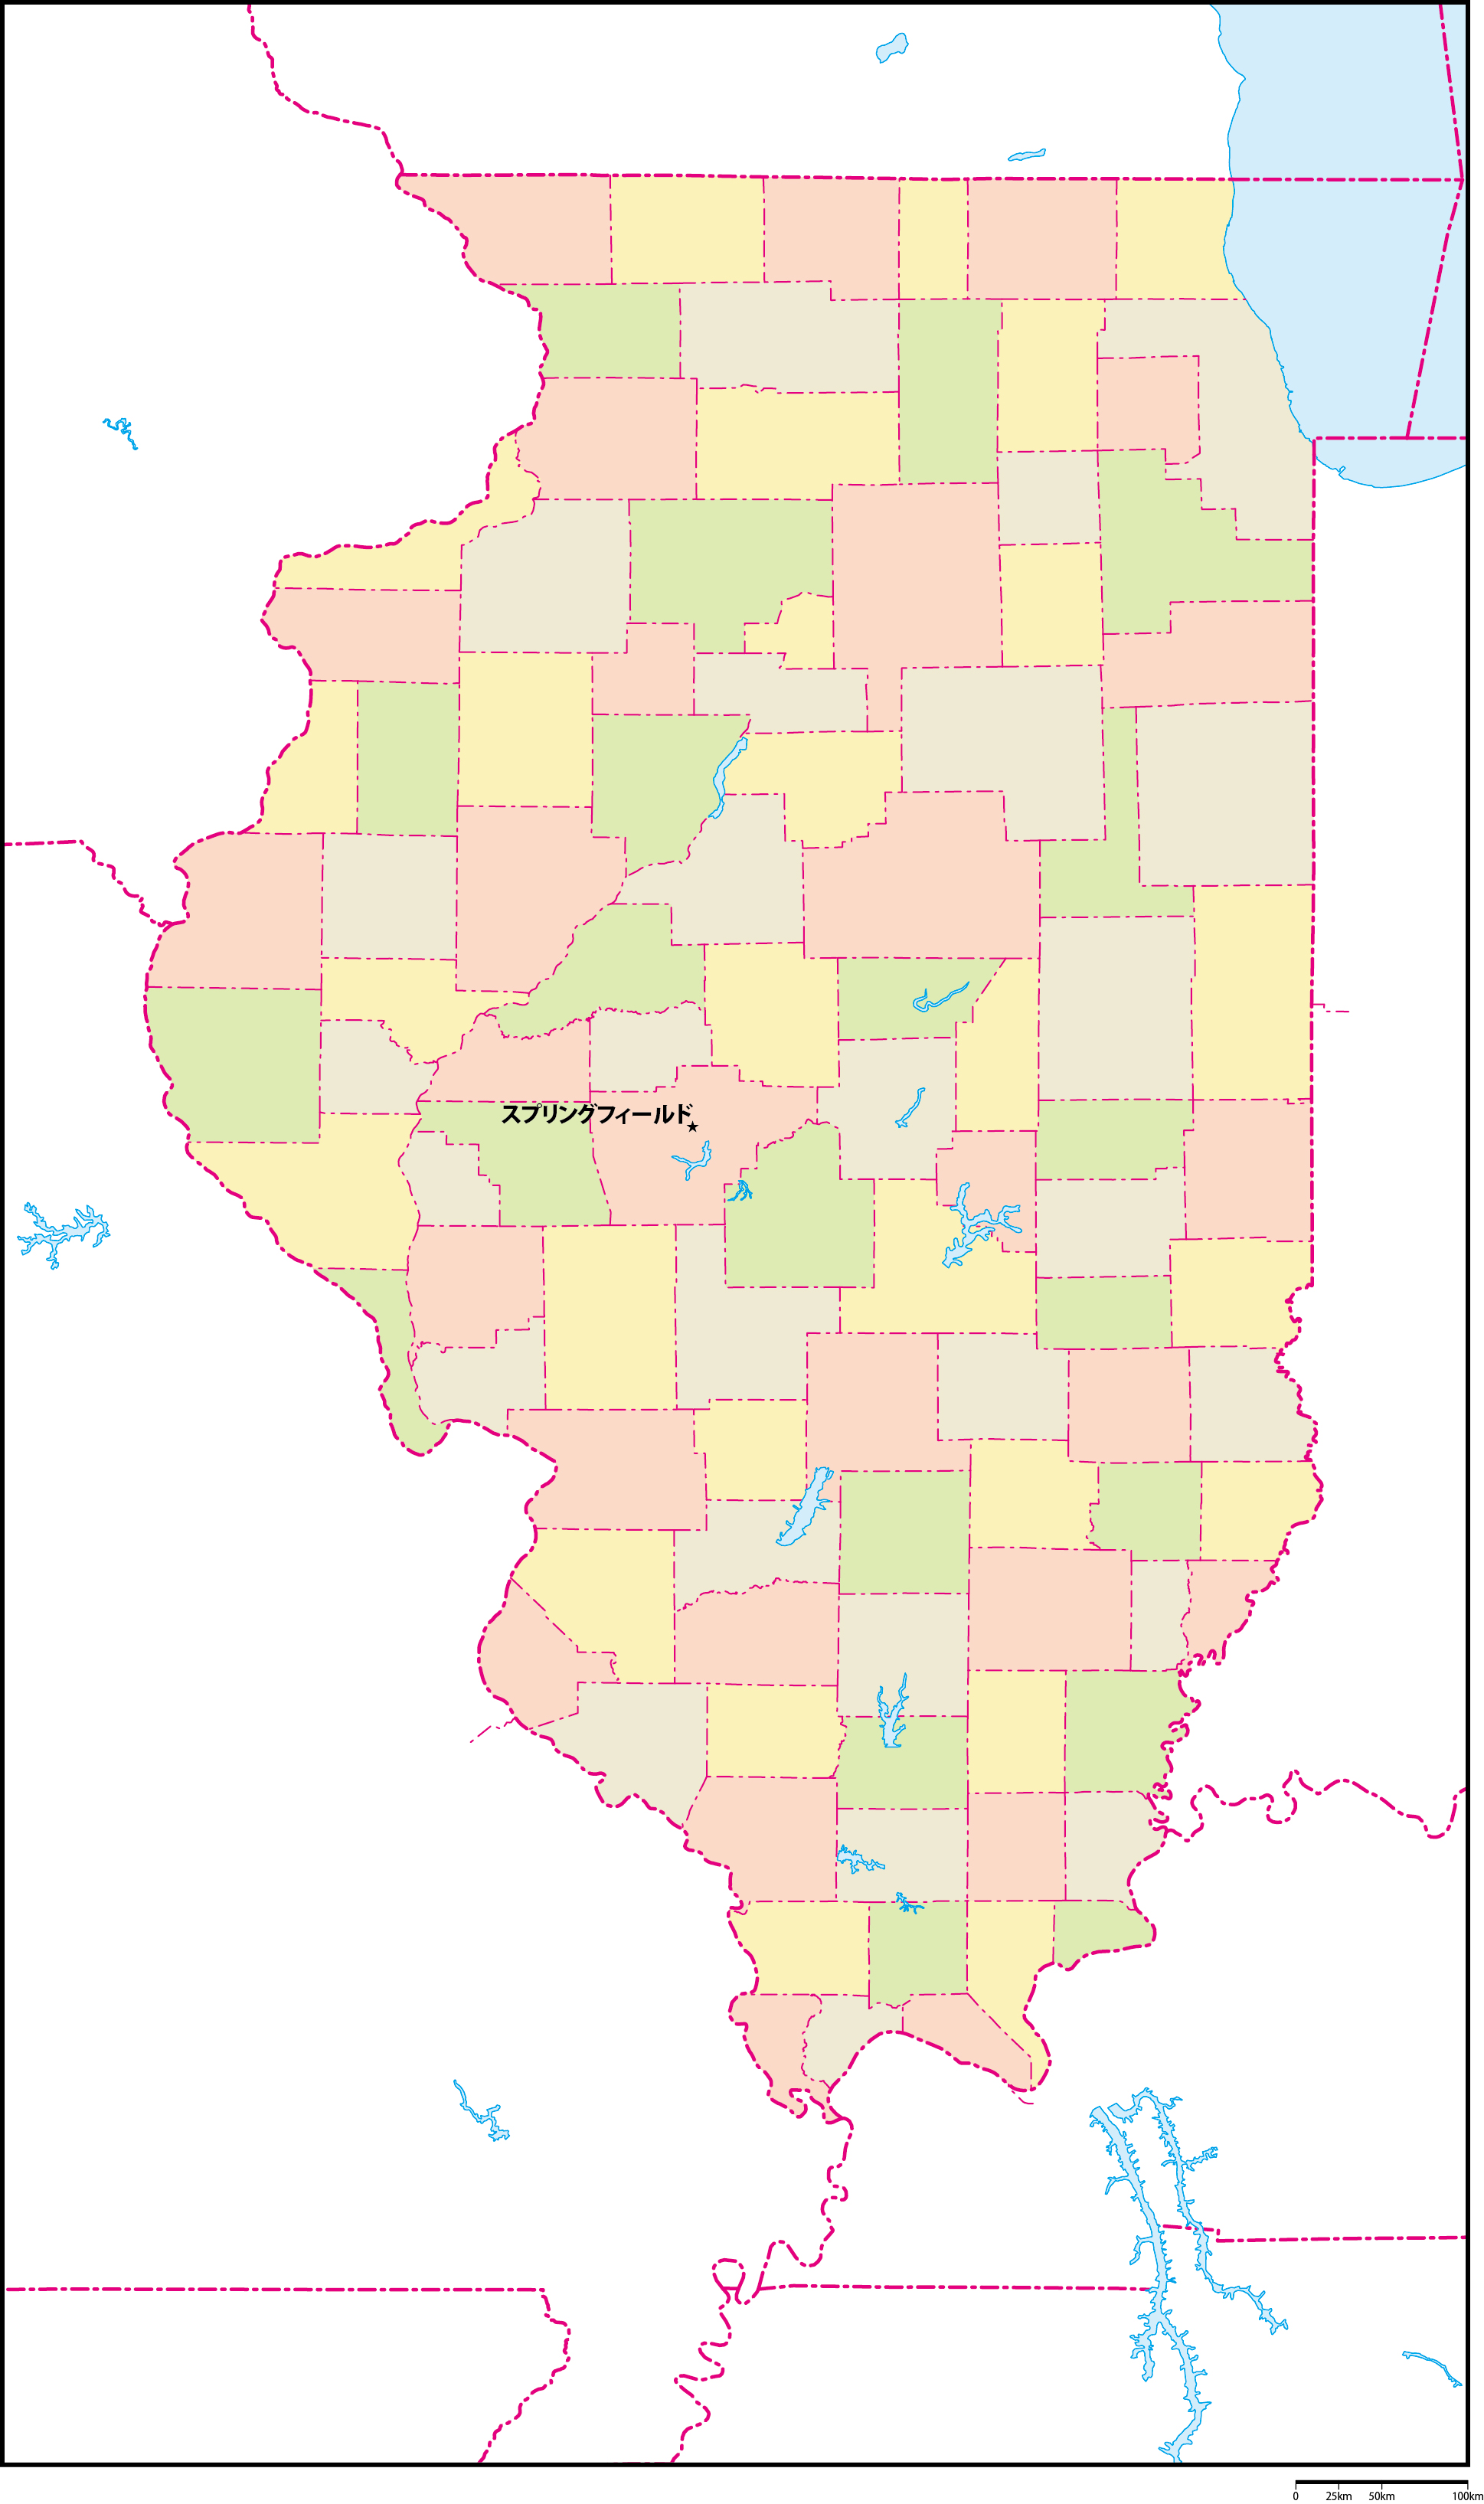 イリノイ州郡色分け地図州都あり(日本語)フリーデータの画像